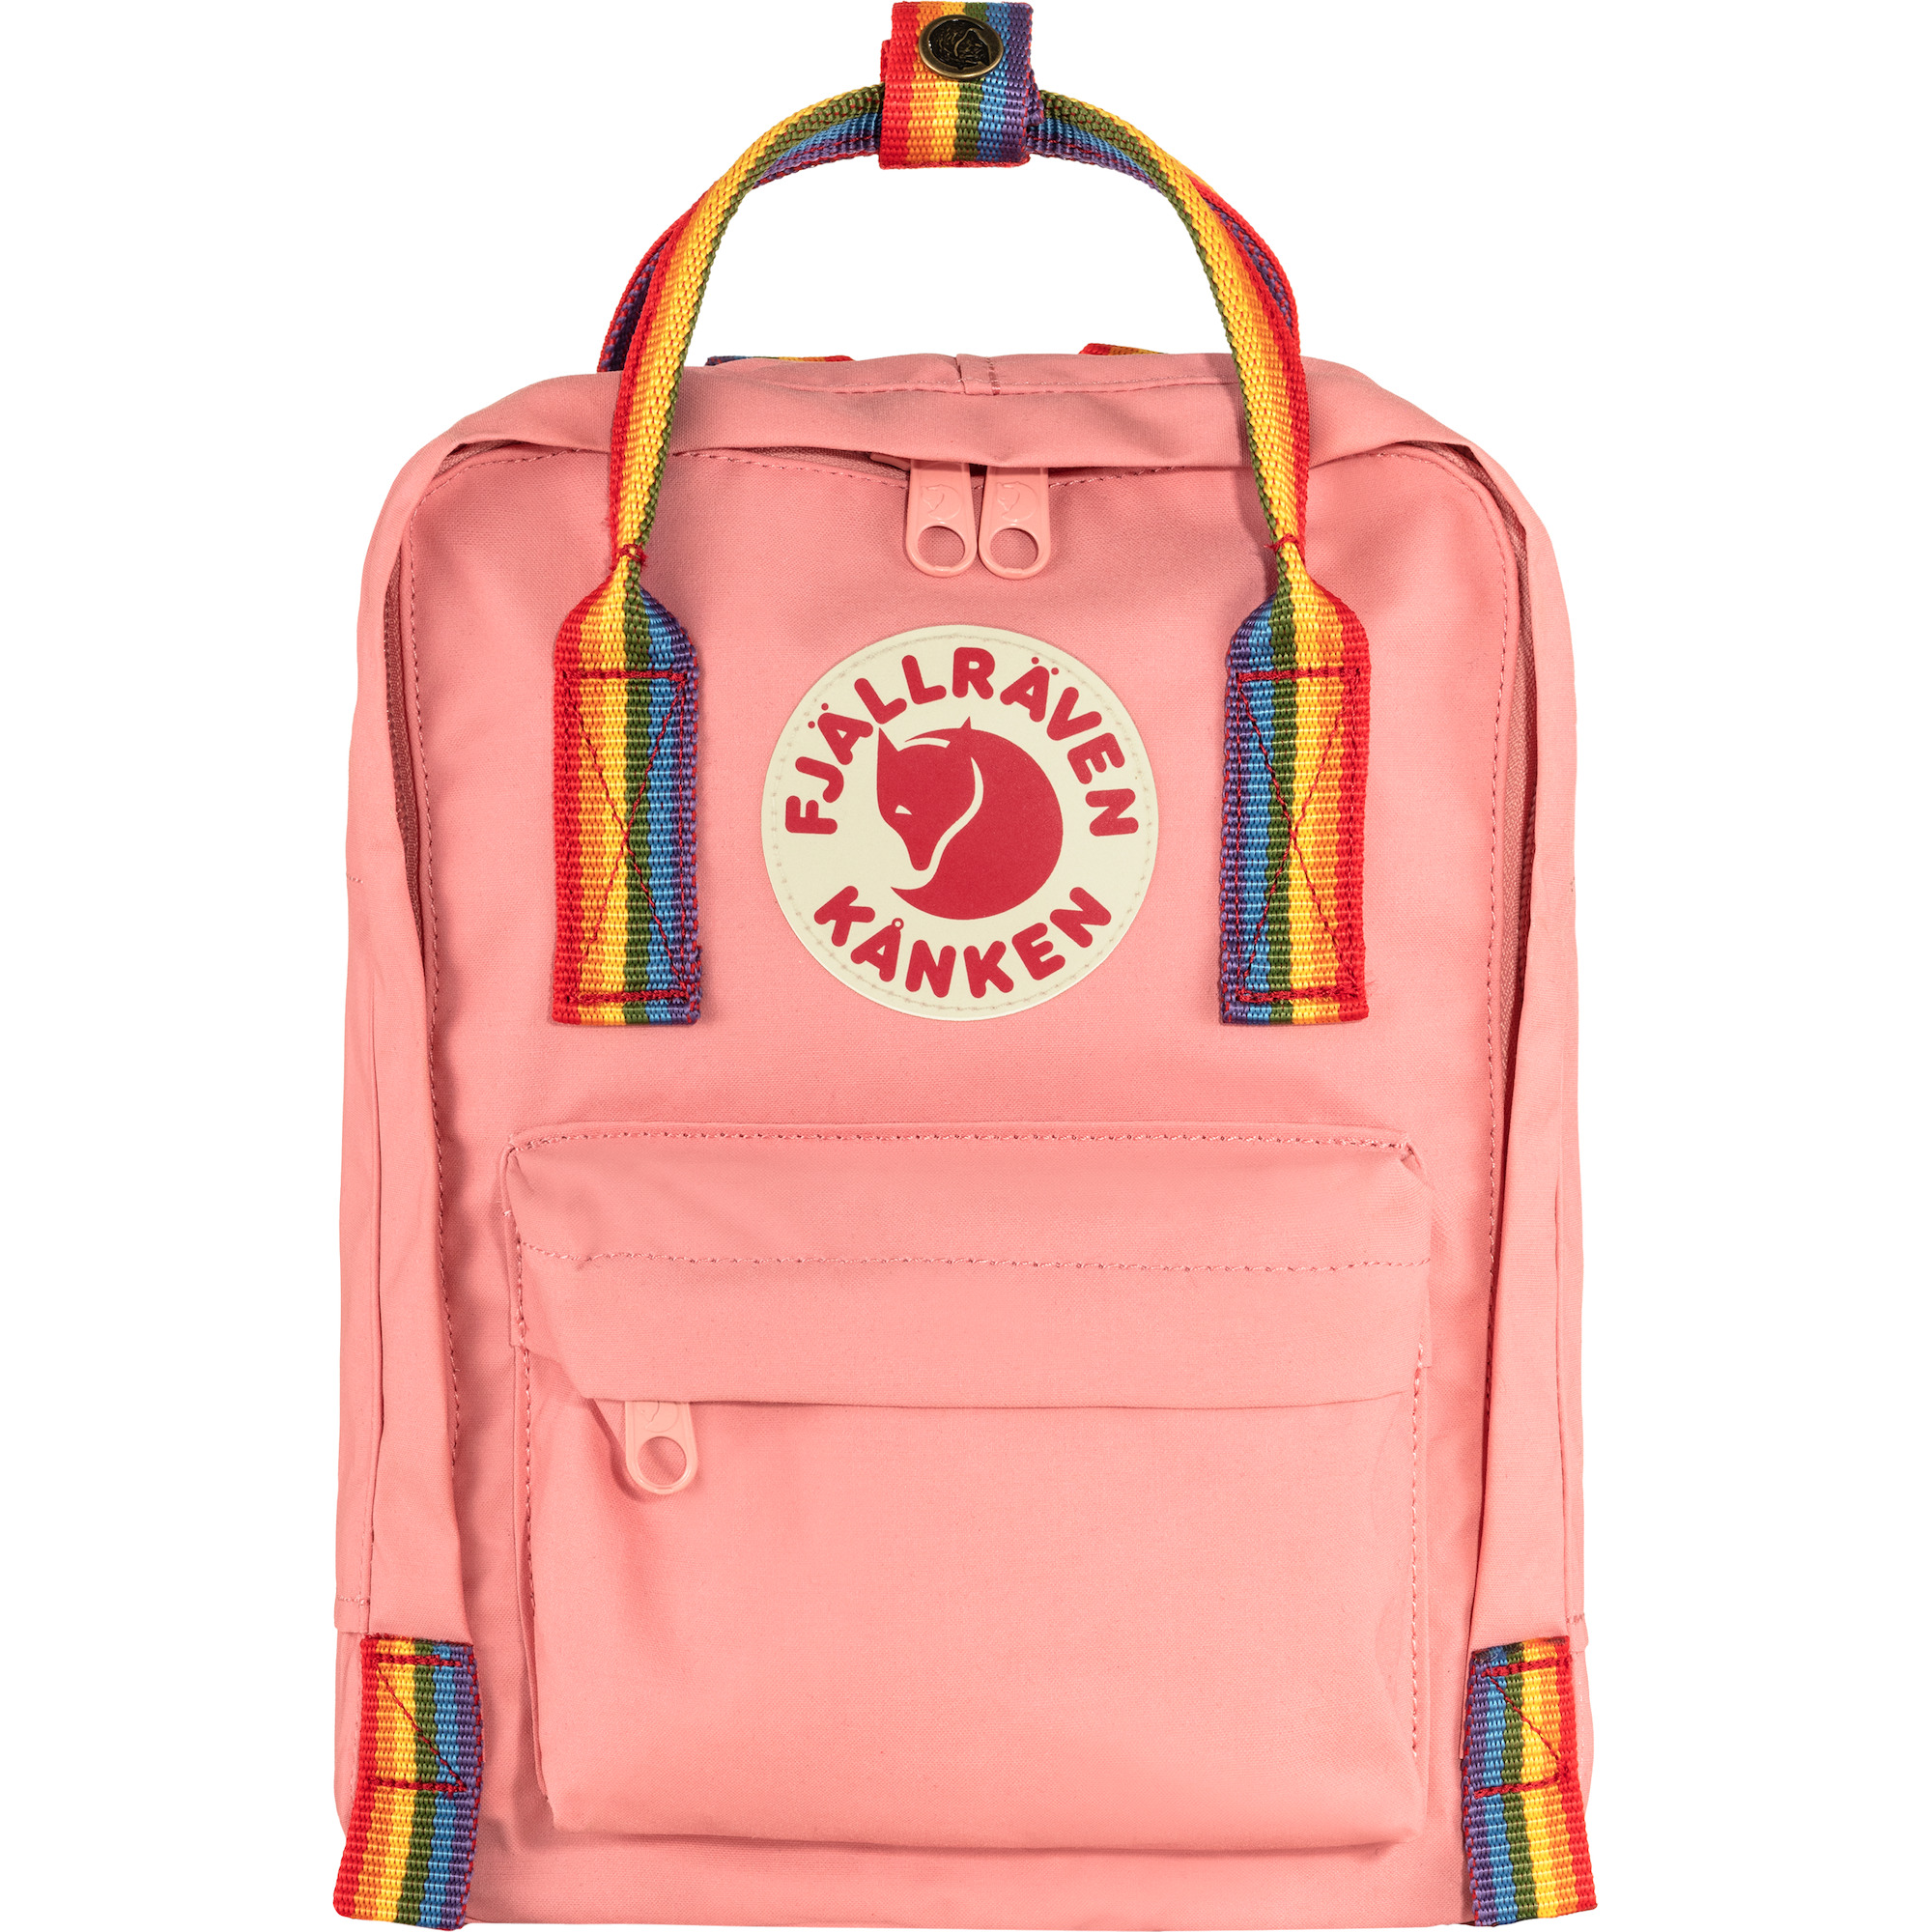 NEU Fjällräven Kanken Rucksack 16L Schule Sport Freizeit Trend Tasche Backpack 